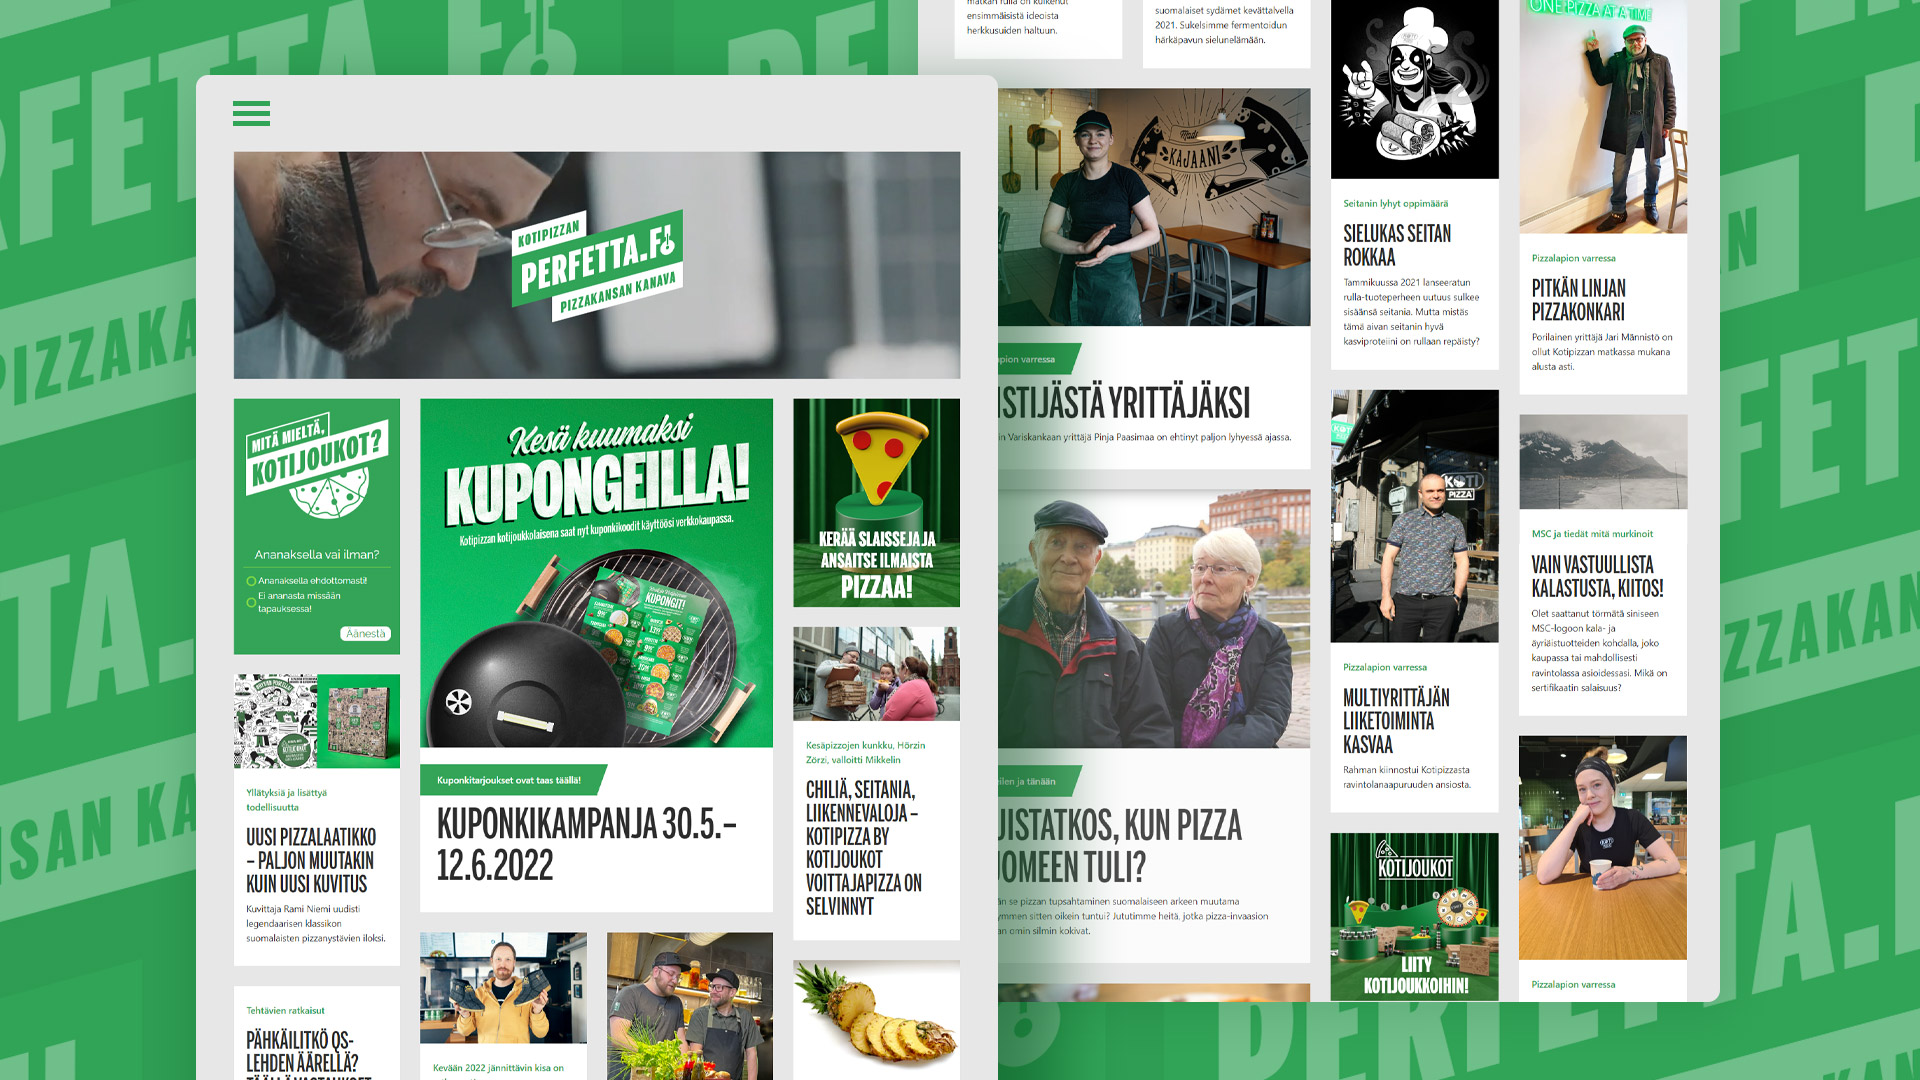 Kotipizza Perfetta.fi layout-suunnittelu